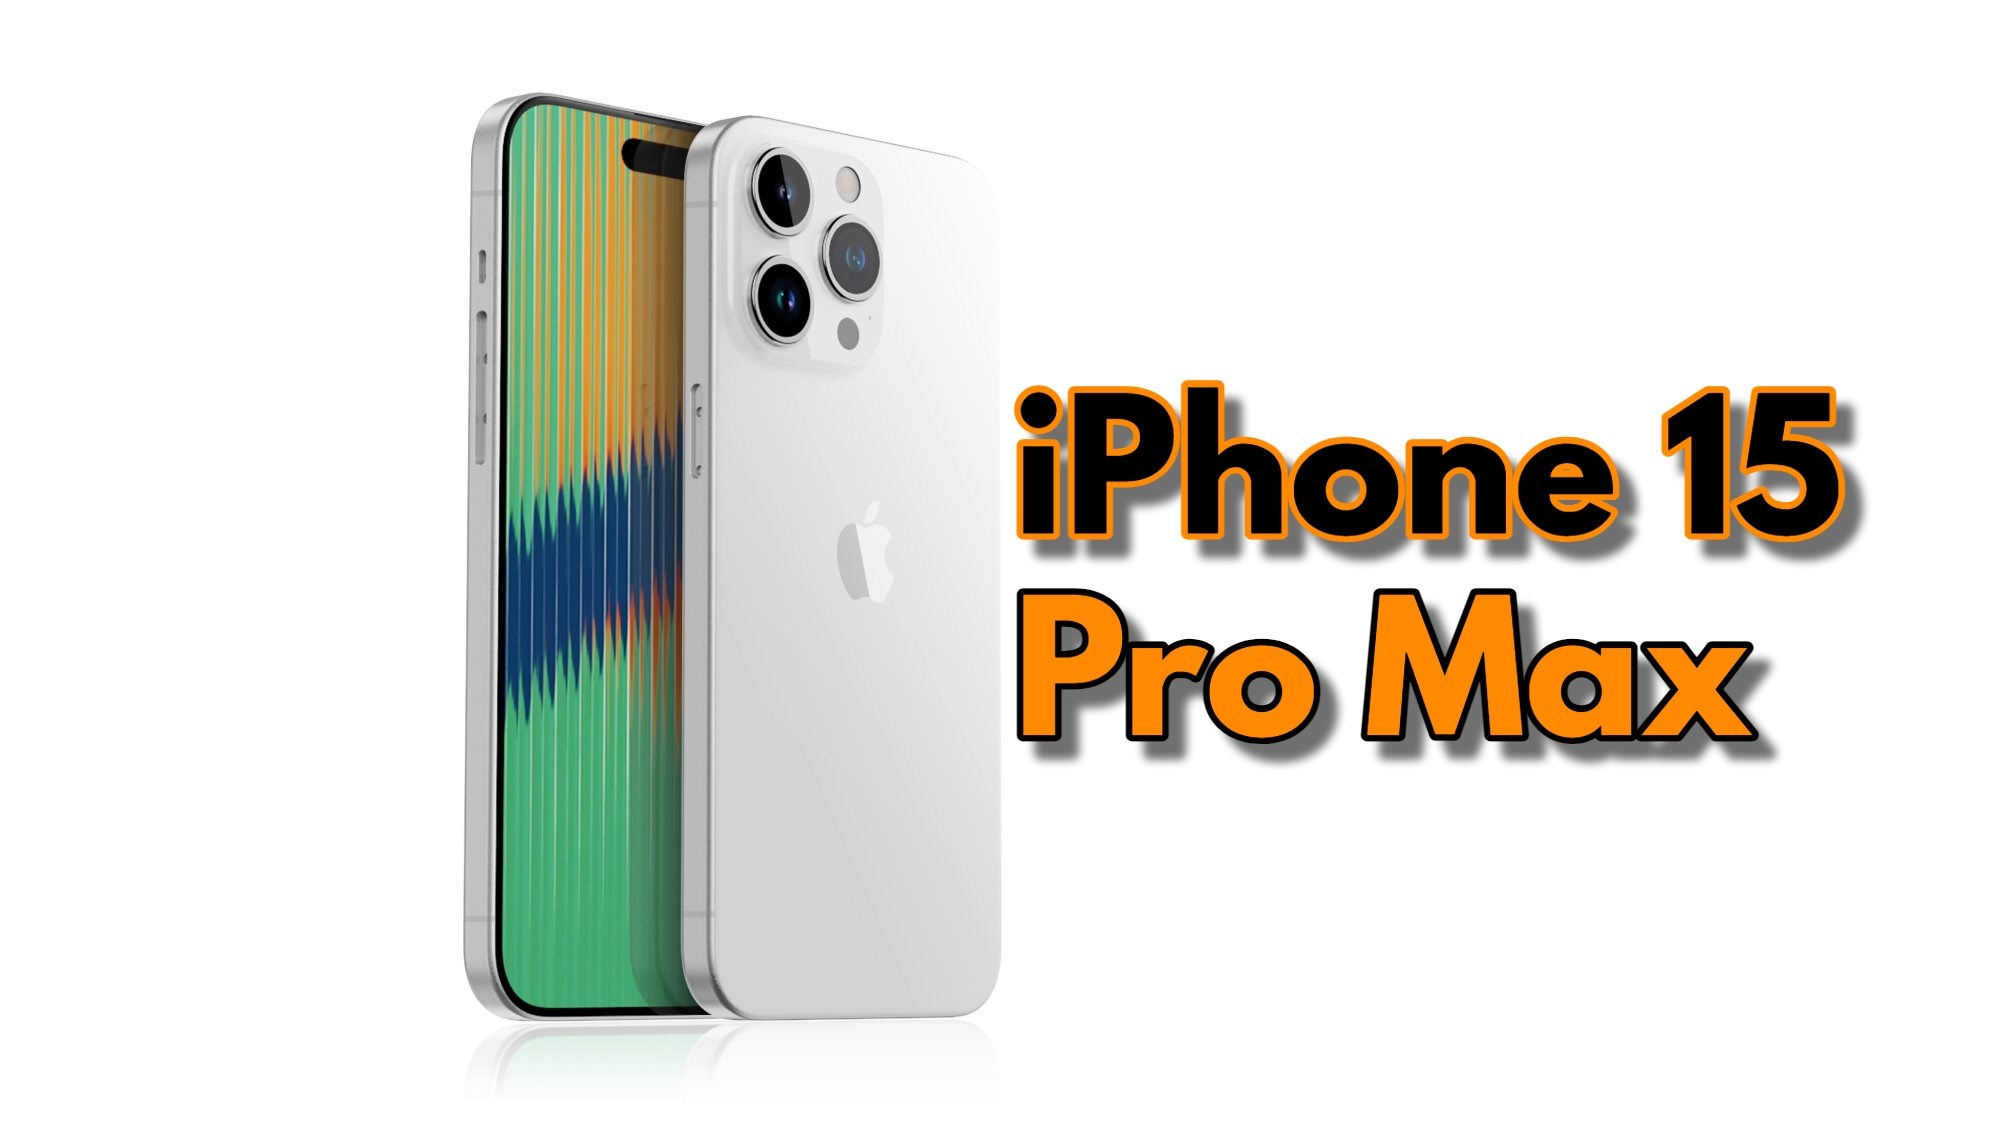 iPhone 15 Pro Max, çerçeveleriyle dünya rekoru kıracak